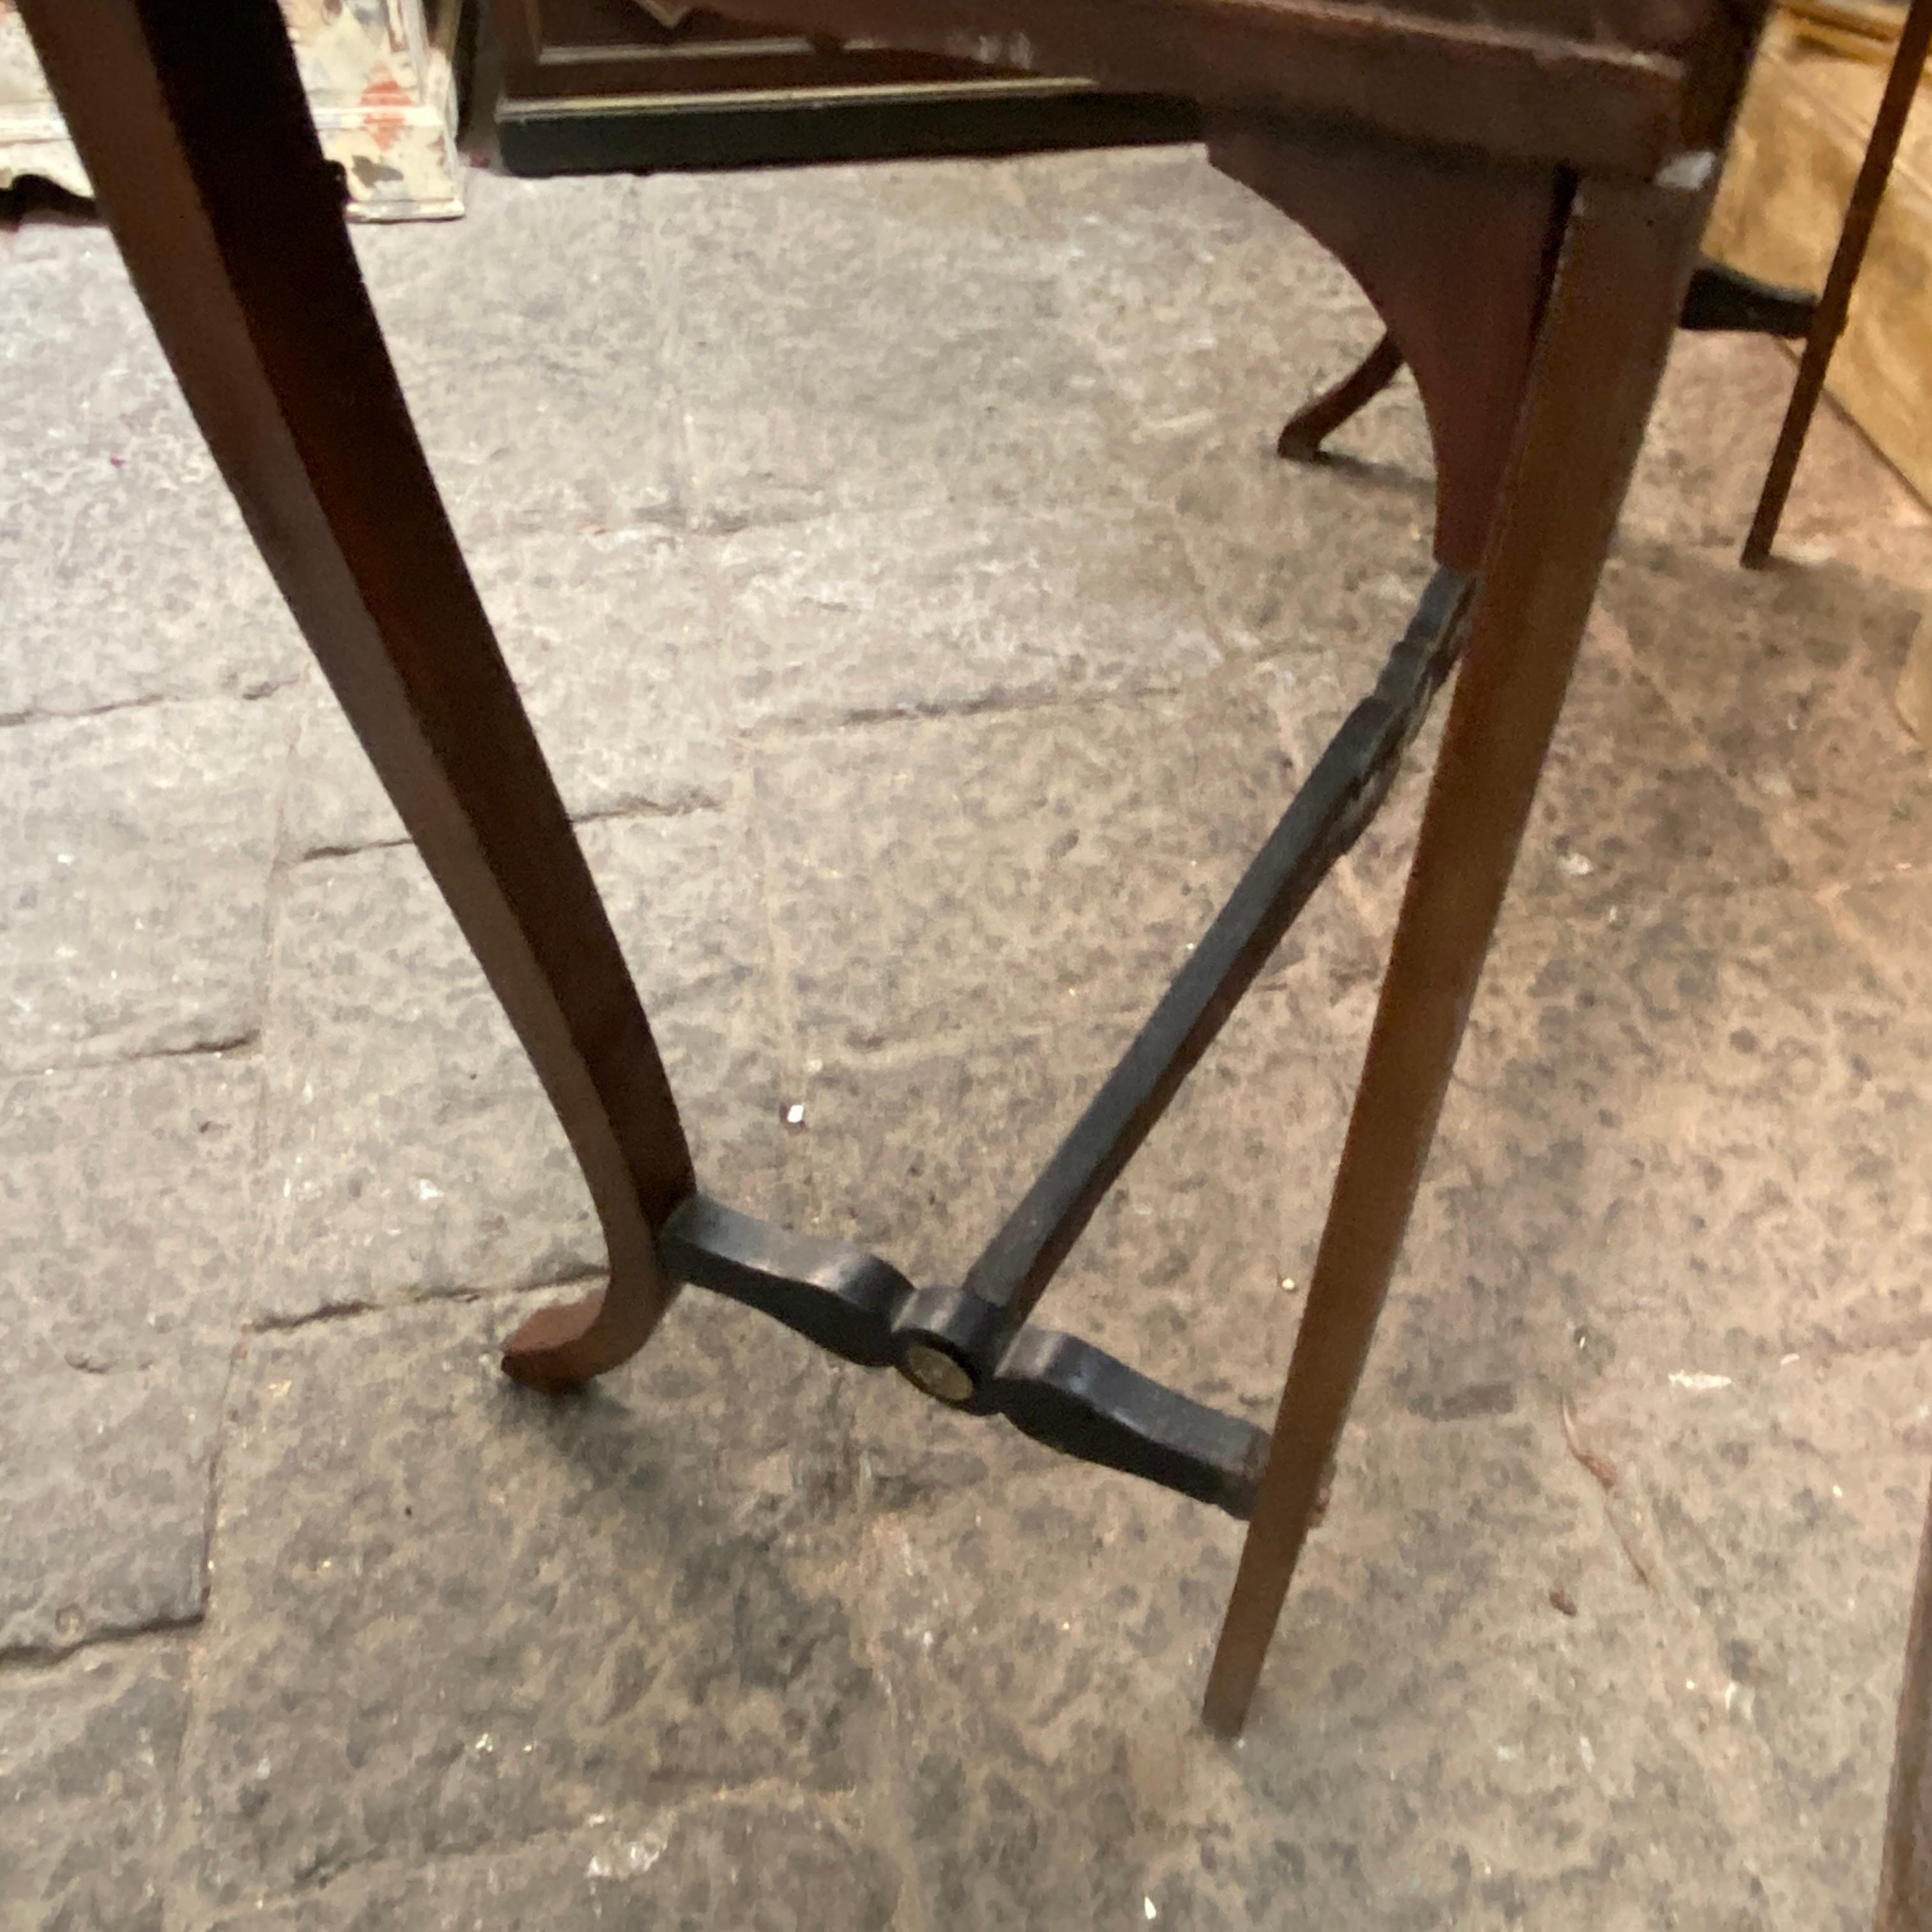 Une console originale en noyer, fabriquée à la main en Sicile dans les années 1820. L'élégance des pieds de sabre est typique de la période Empire comme les frises dorées et les parties noires. Il a probablement été conçu pour une résidence noble.